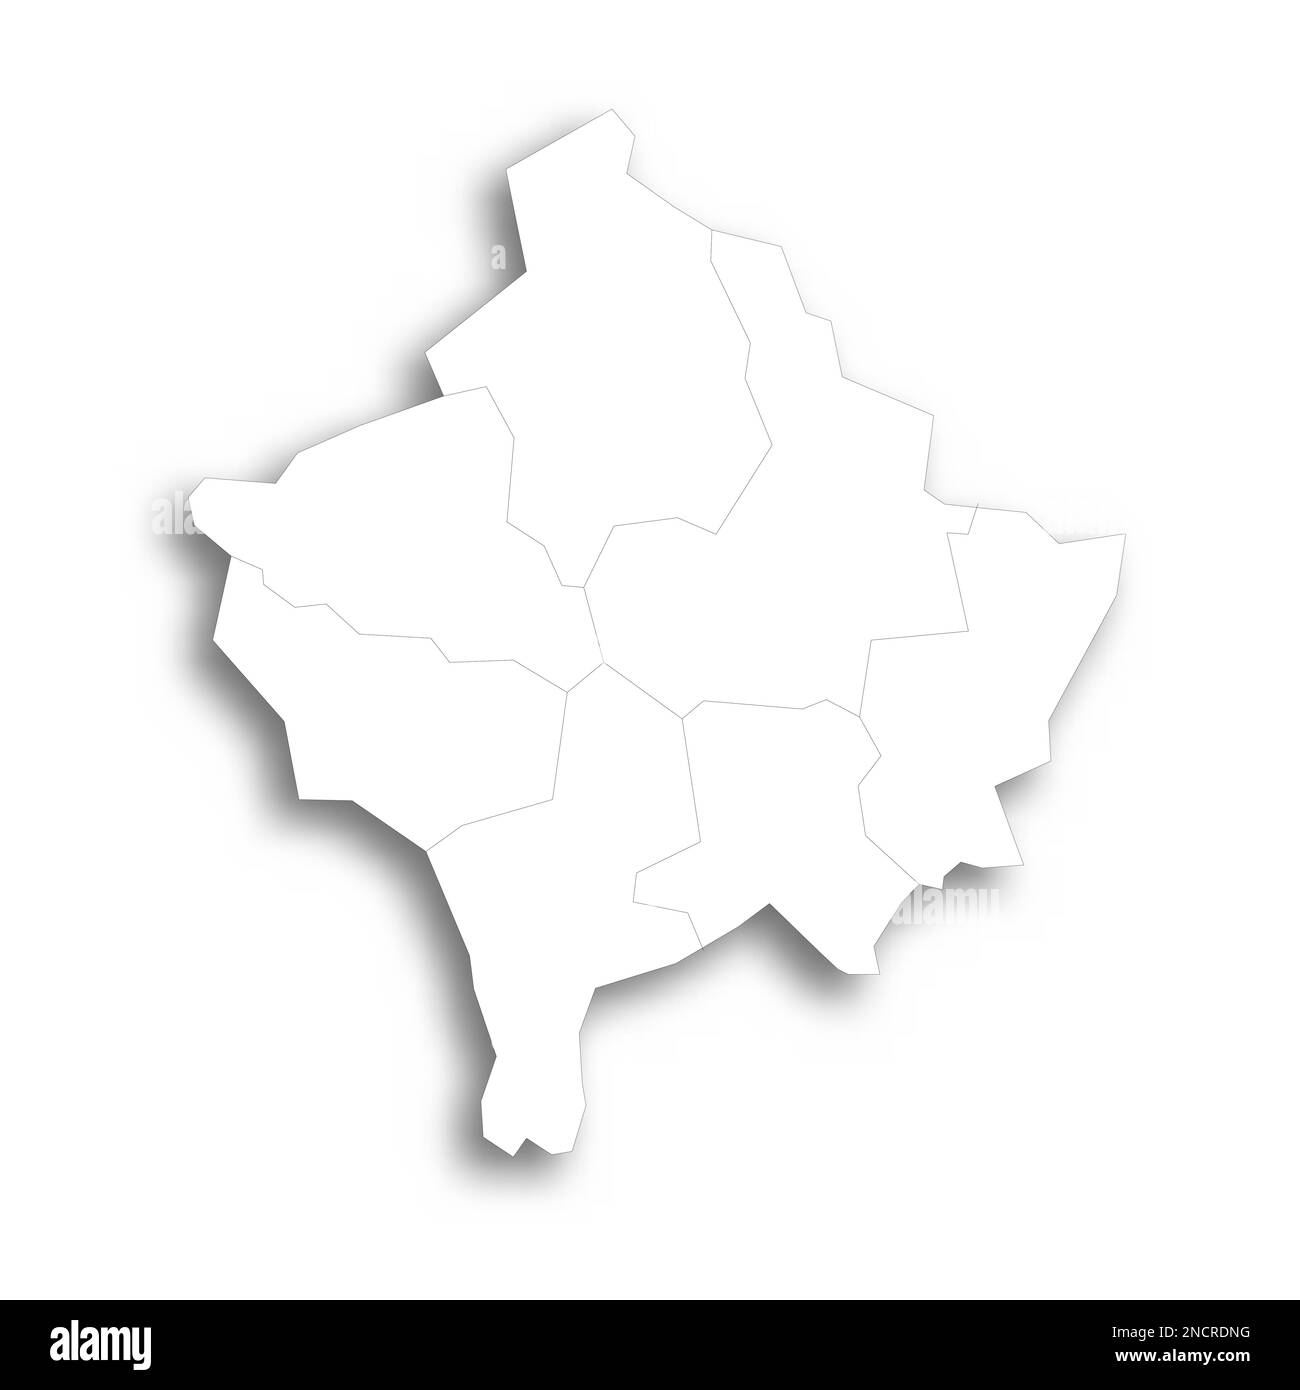 Mappa politica del Kosovo delle divisioni amministrative - distretti. Mappa bianca piatta con contorni neri sottili e ombre sfumate. Illustrazione Vettoriale